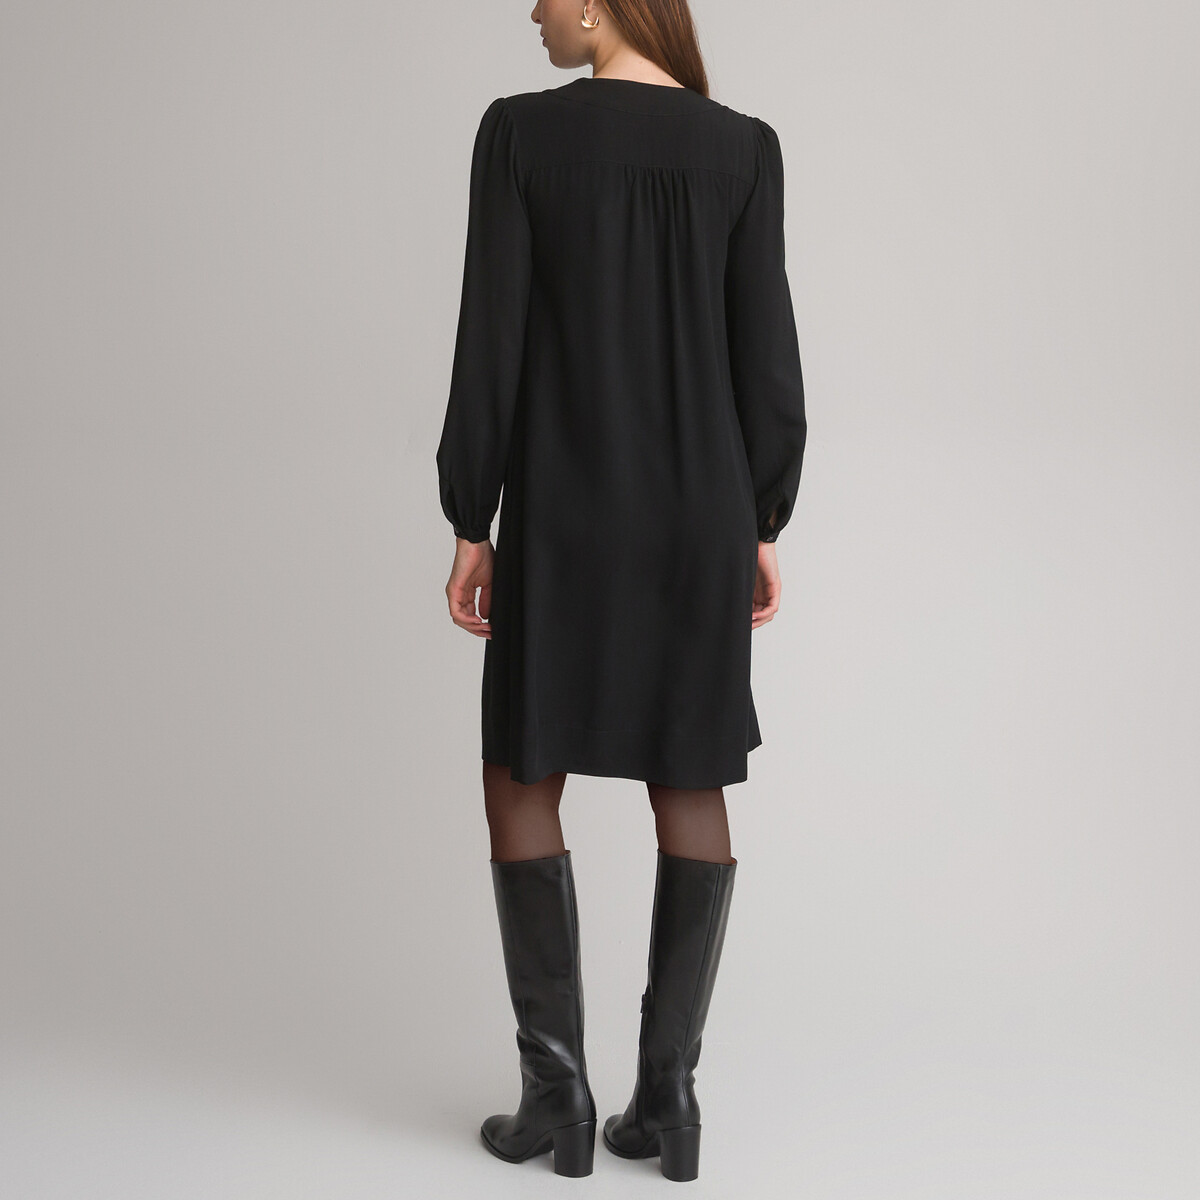 Платье-миди Расклешенное 44 черный LaRedoute, размер 44 - фото 4